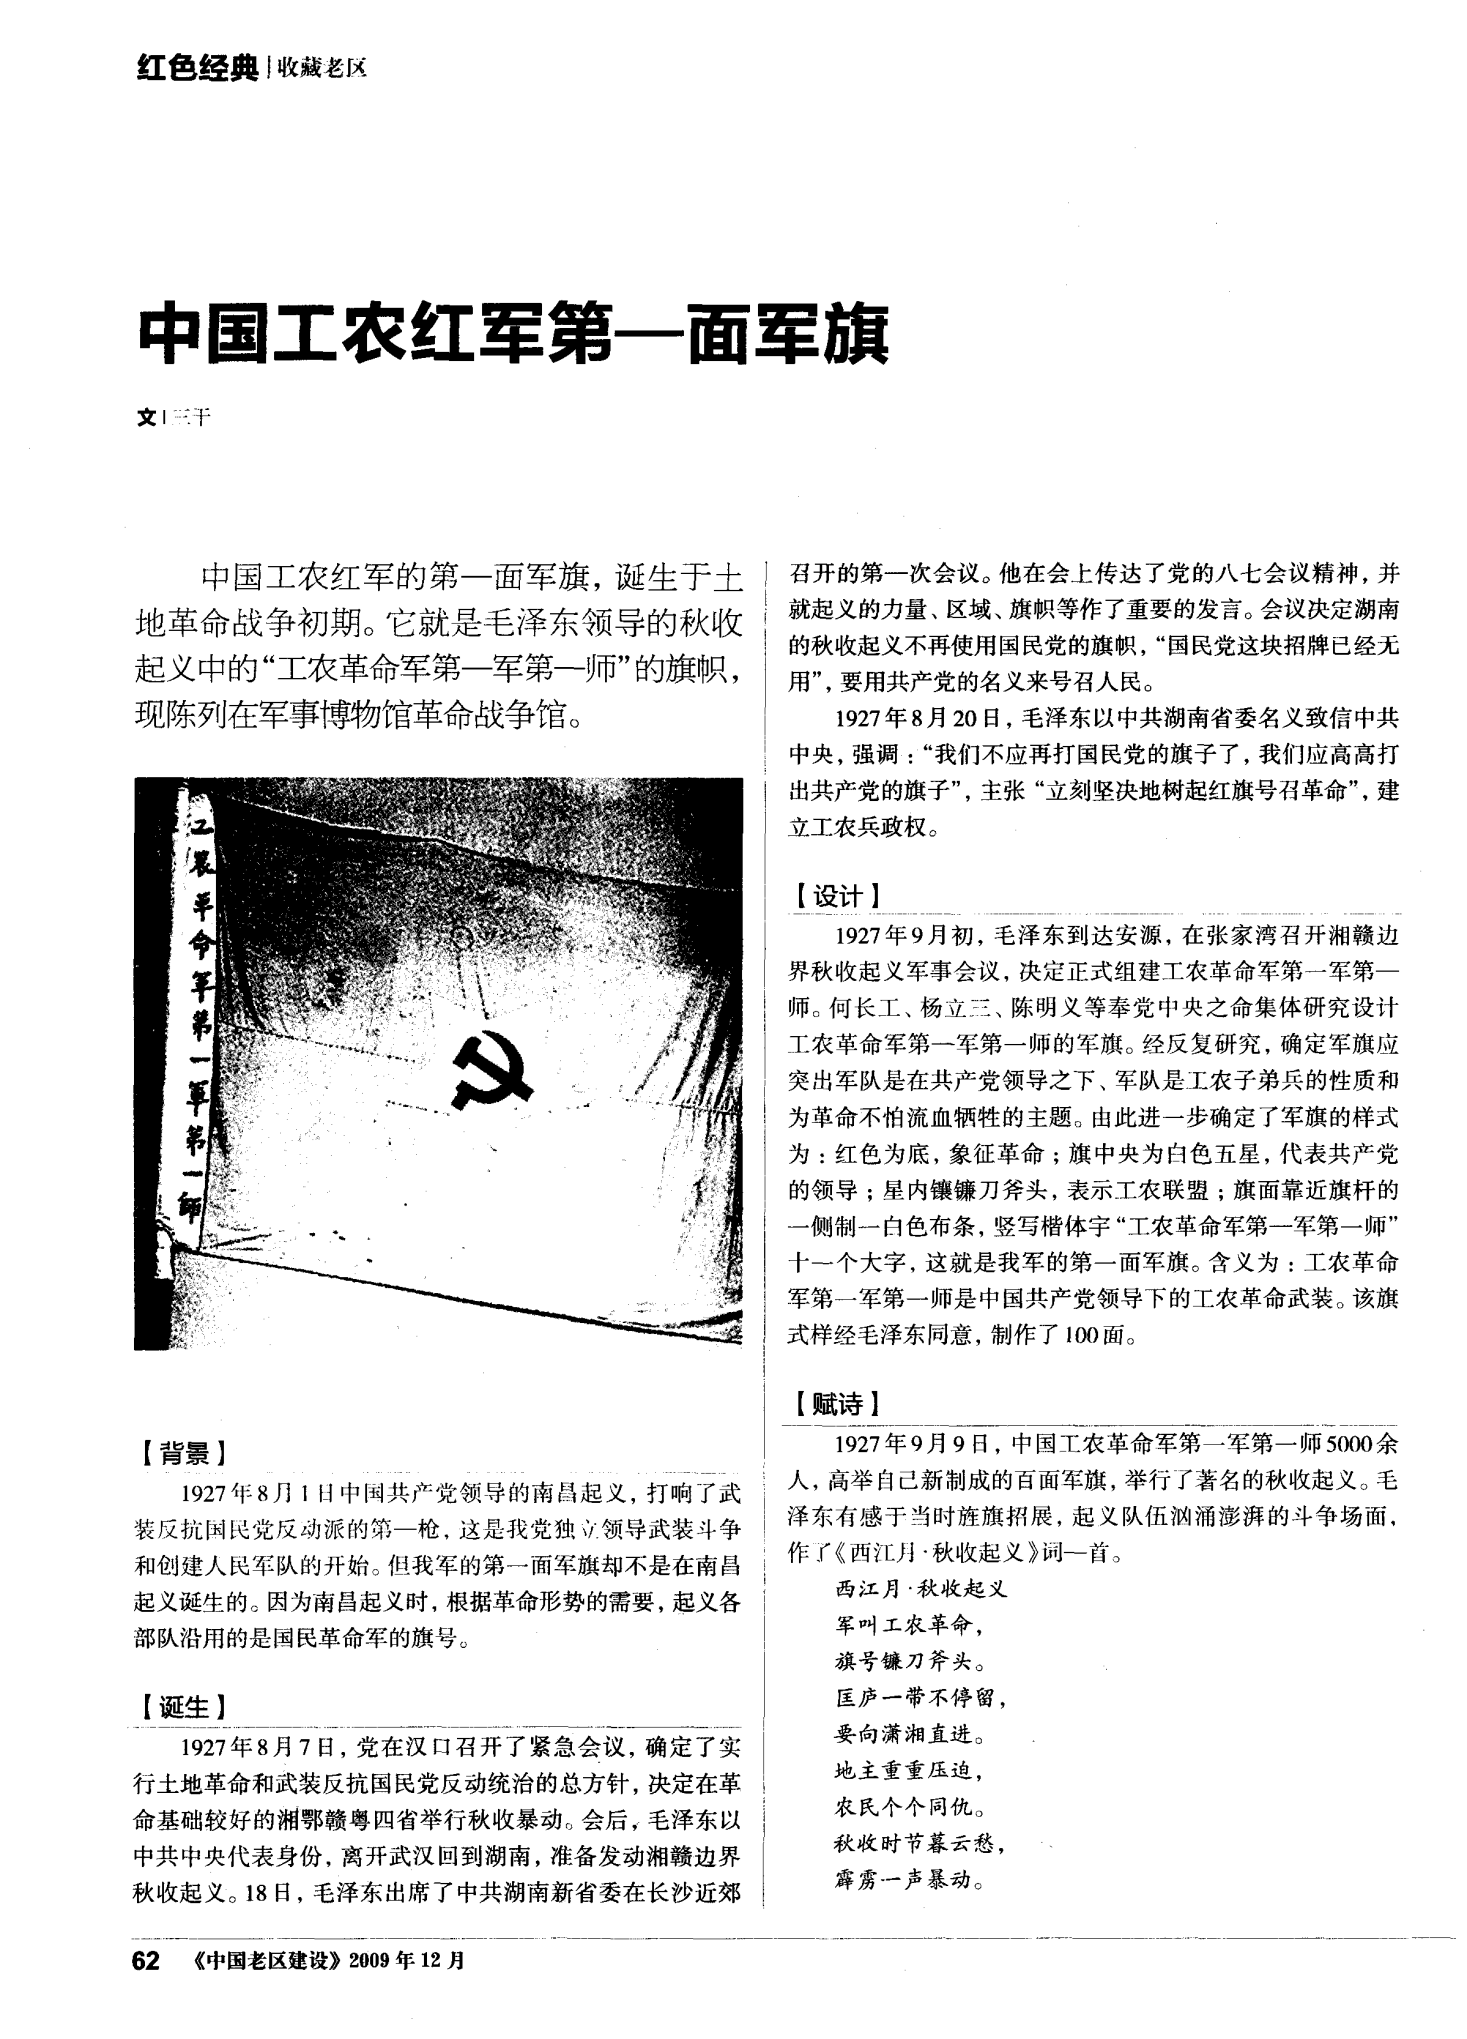 中国工农红军第一面军旗